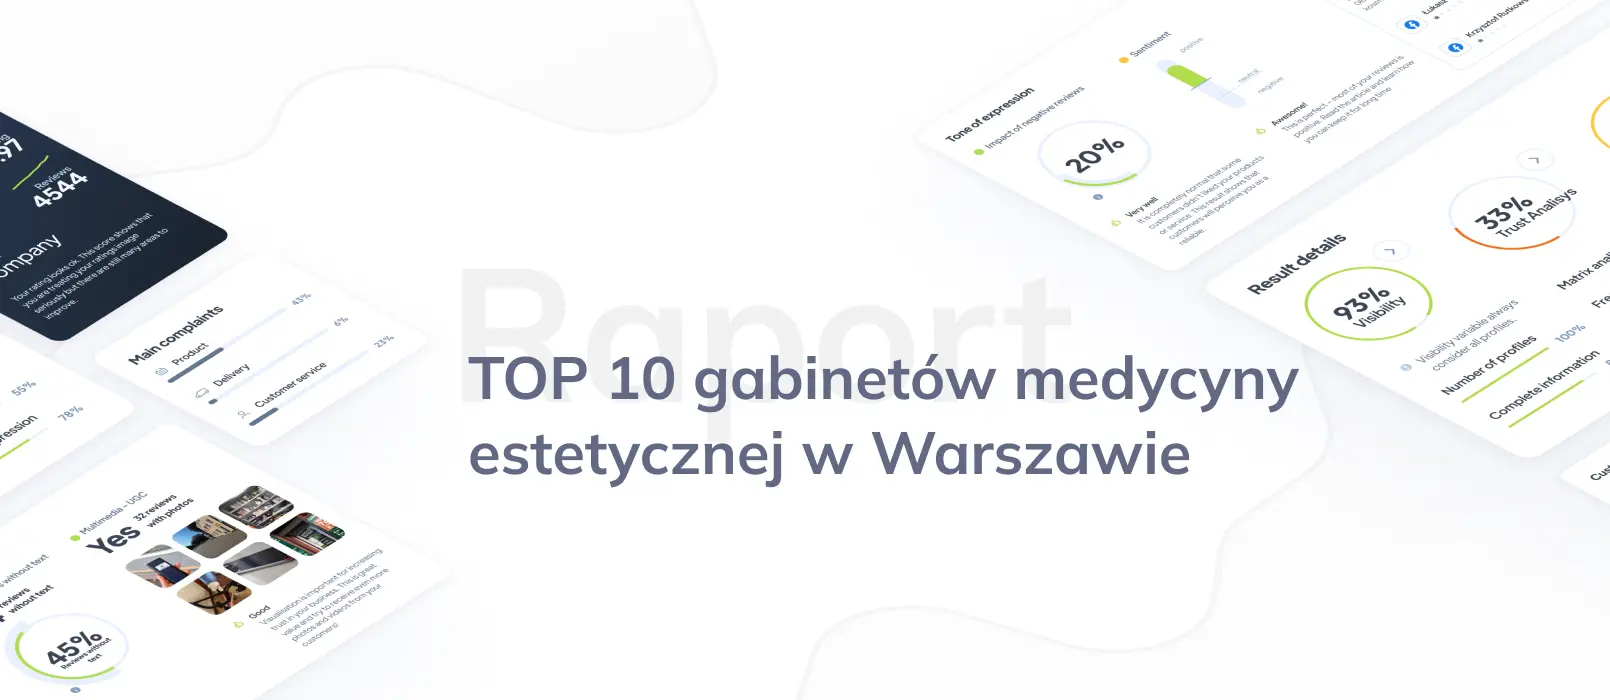 TOP 10: Ranking najlepszych gabinetów medycyny estetycznej w Warszawie